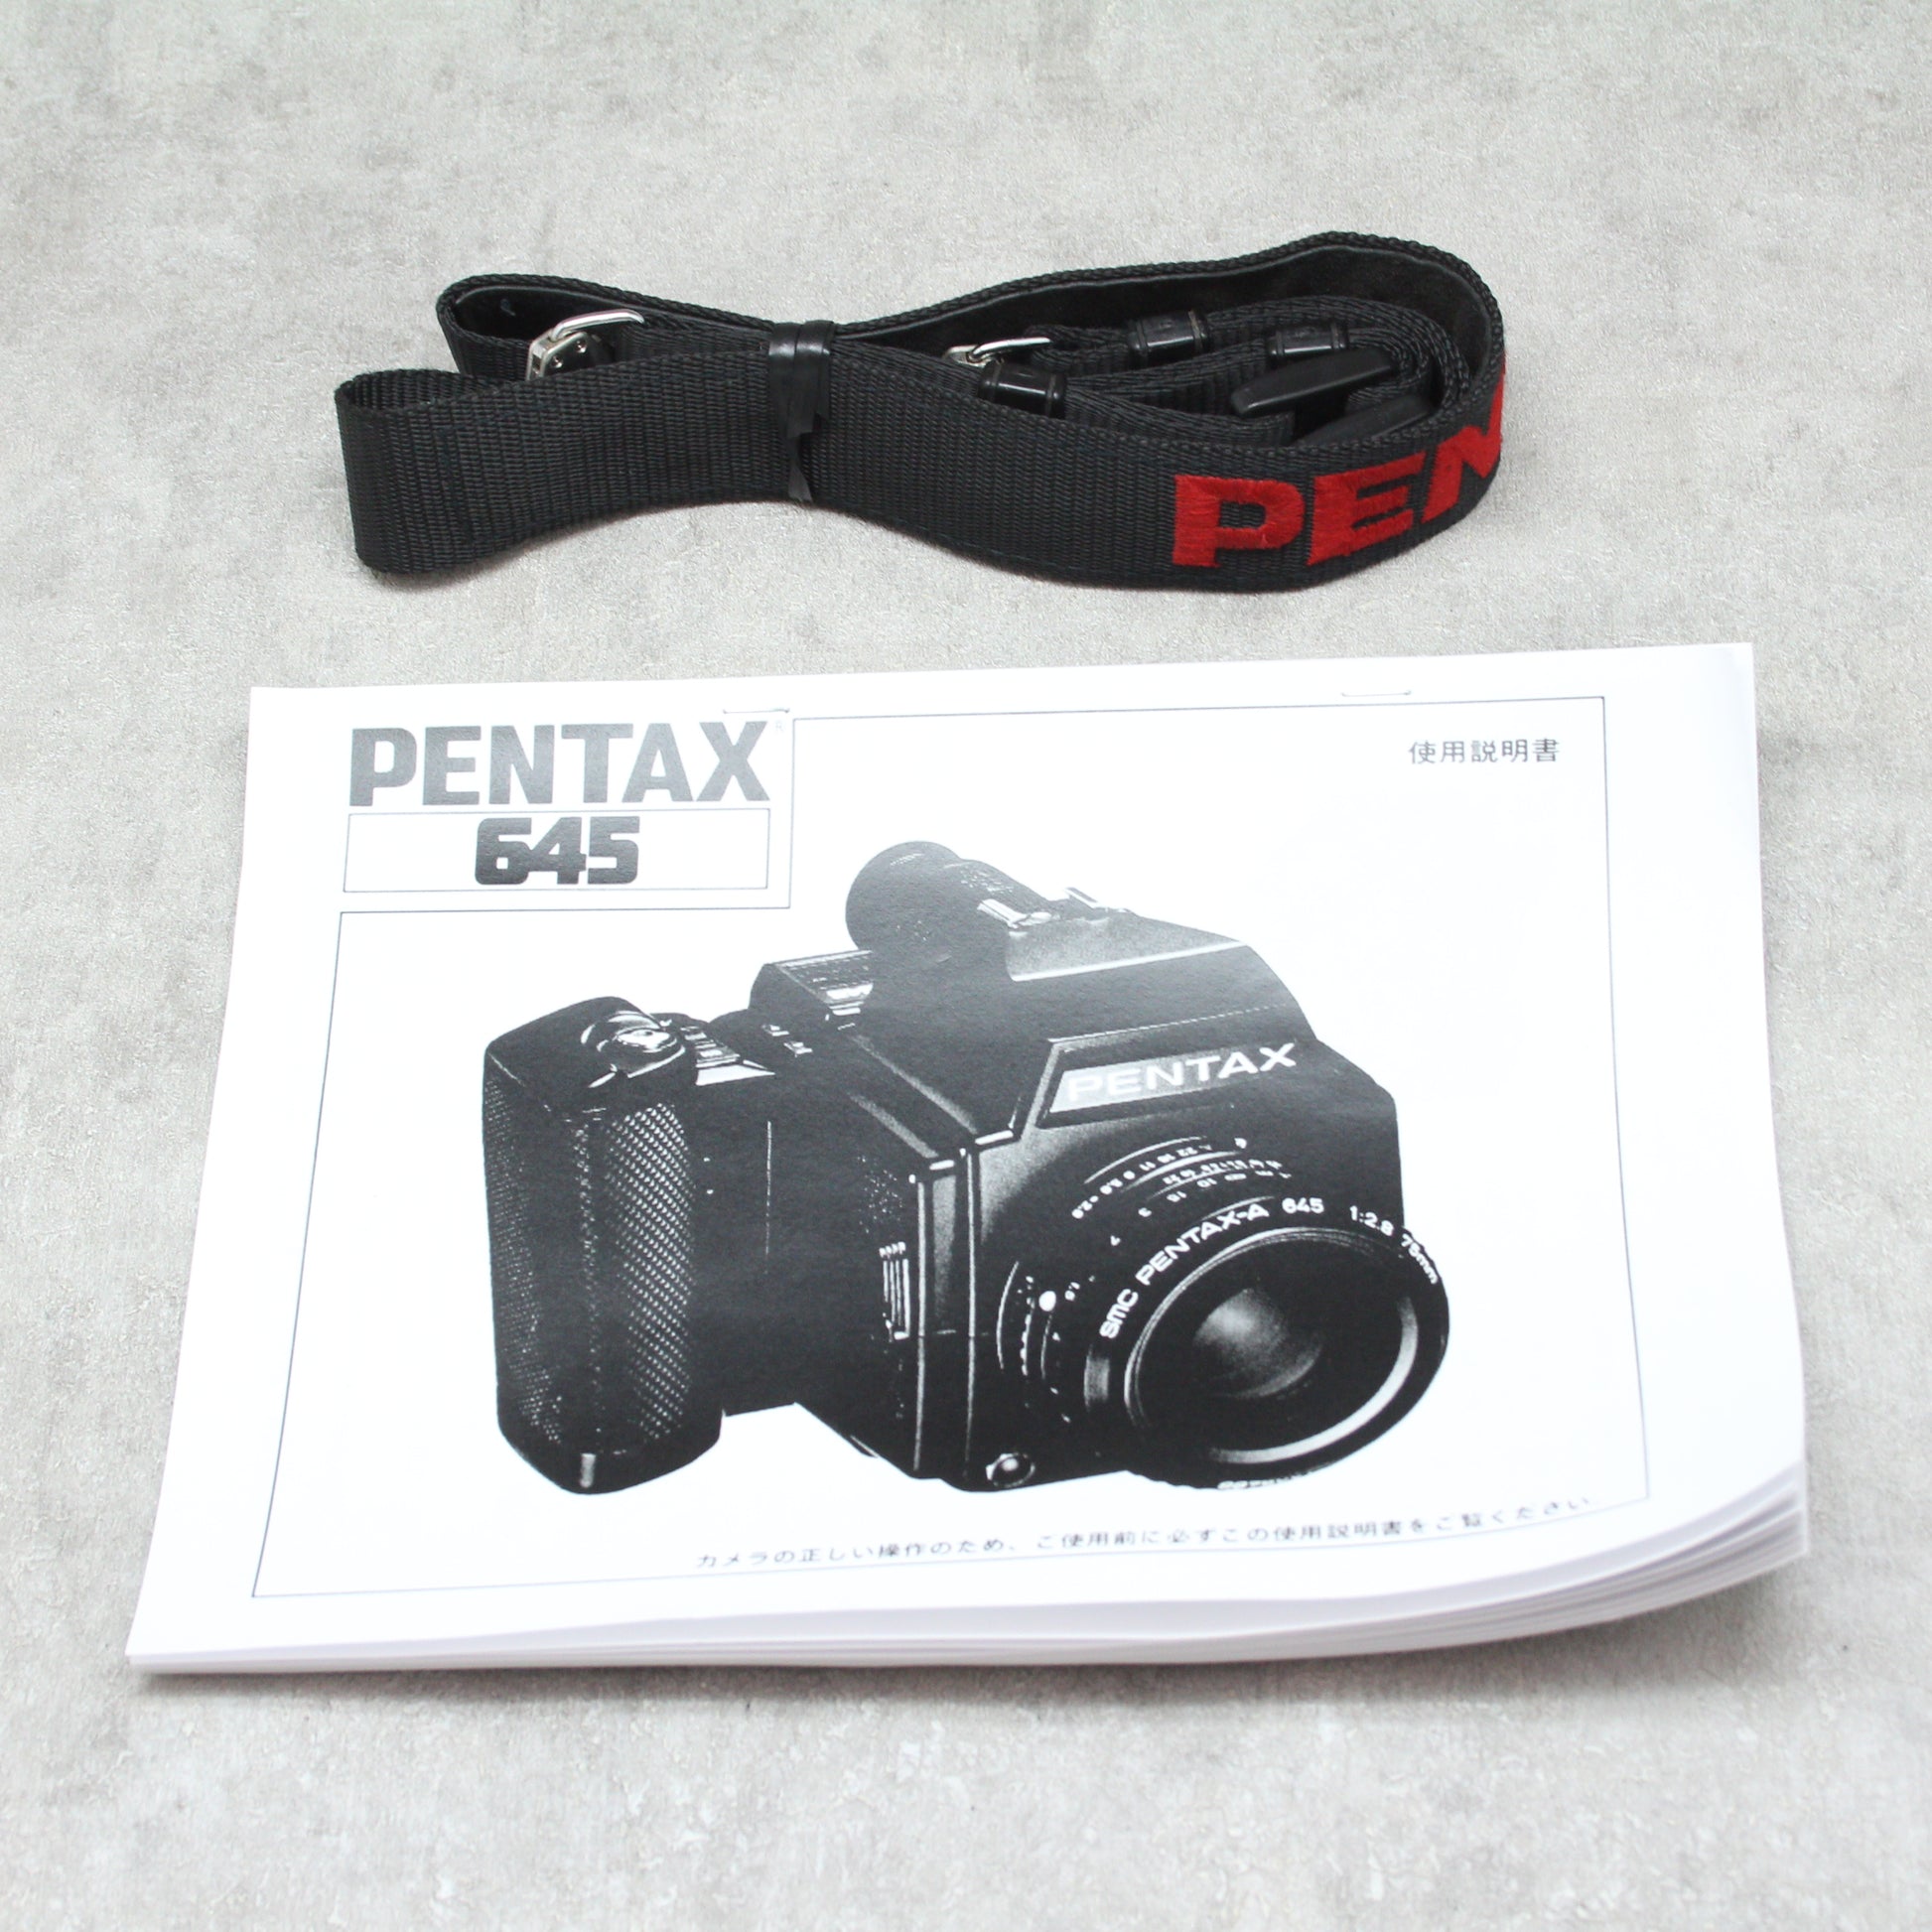 中古品 PENTAX 645 + 75mm F2.8 【7月17日(月)のYouTube生配信でご紹介】